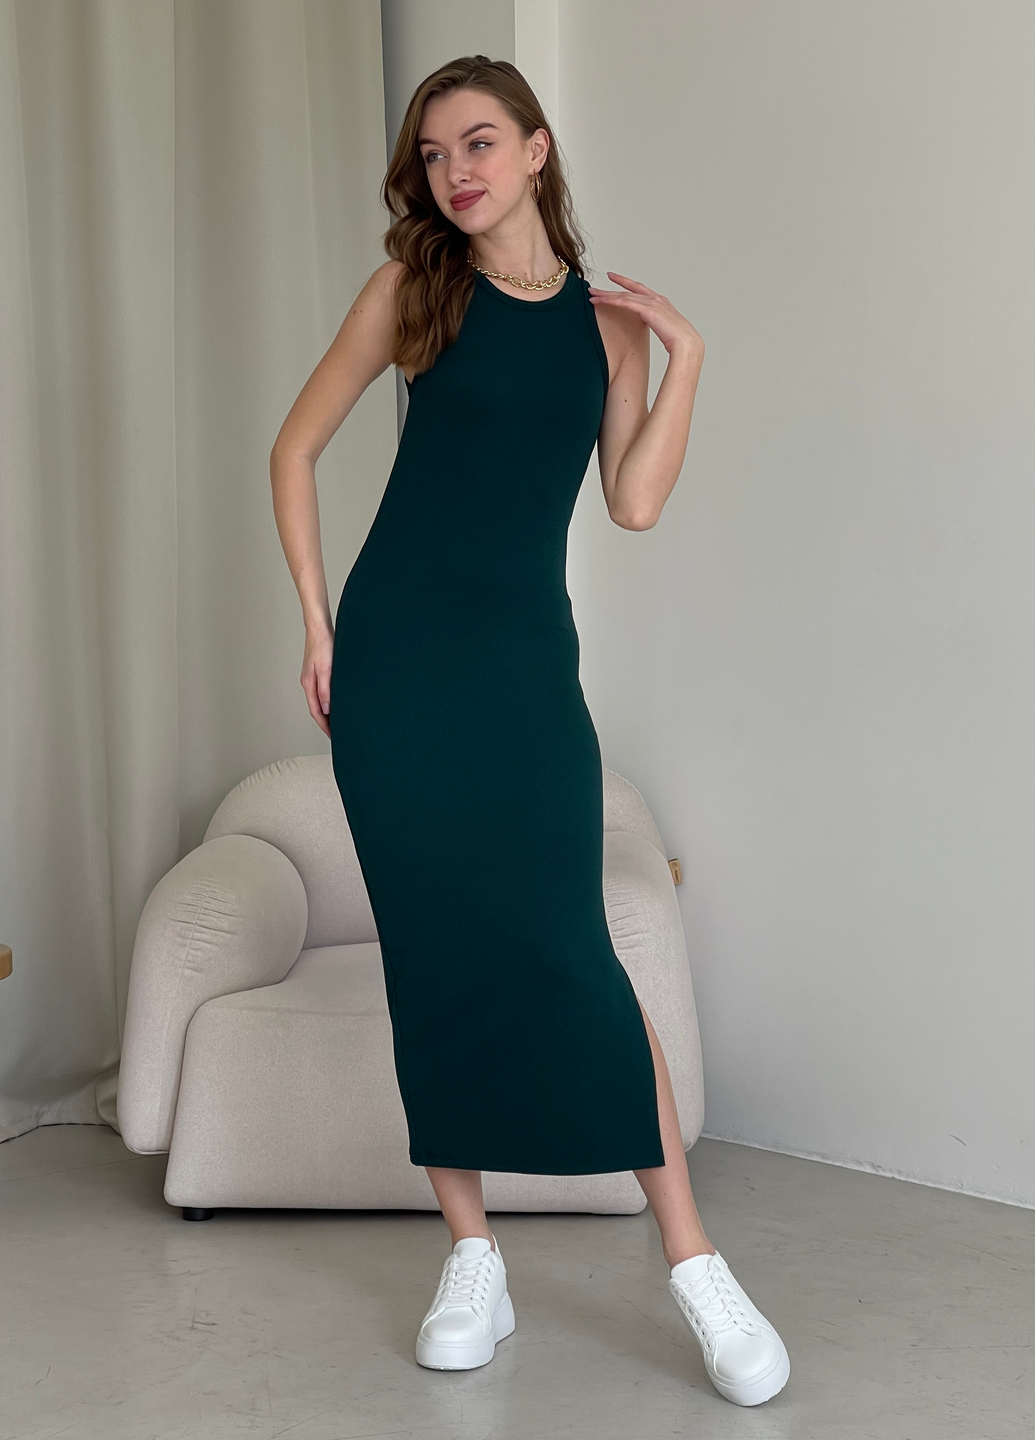 Купить Длинное платье-майка в рубчик зеленое Merlini Лонга 700000112 размер 42-44 (S-M) в интернет-магазине